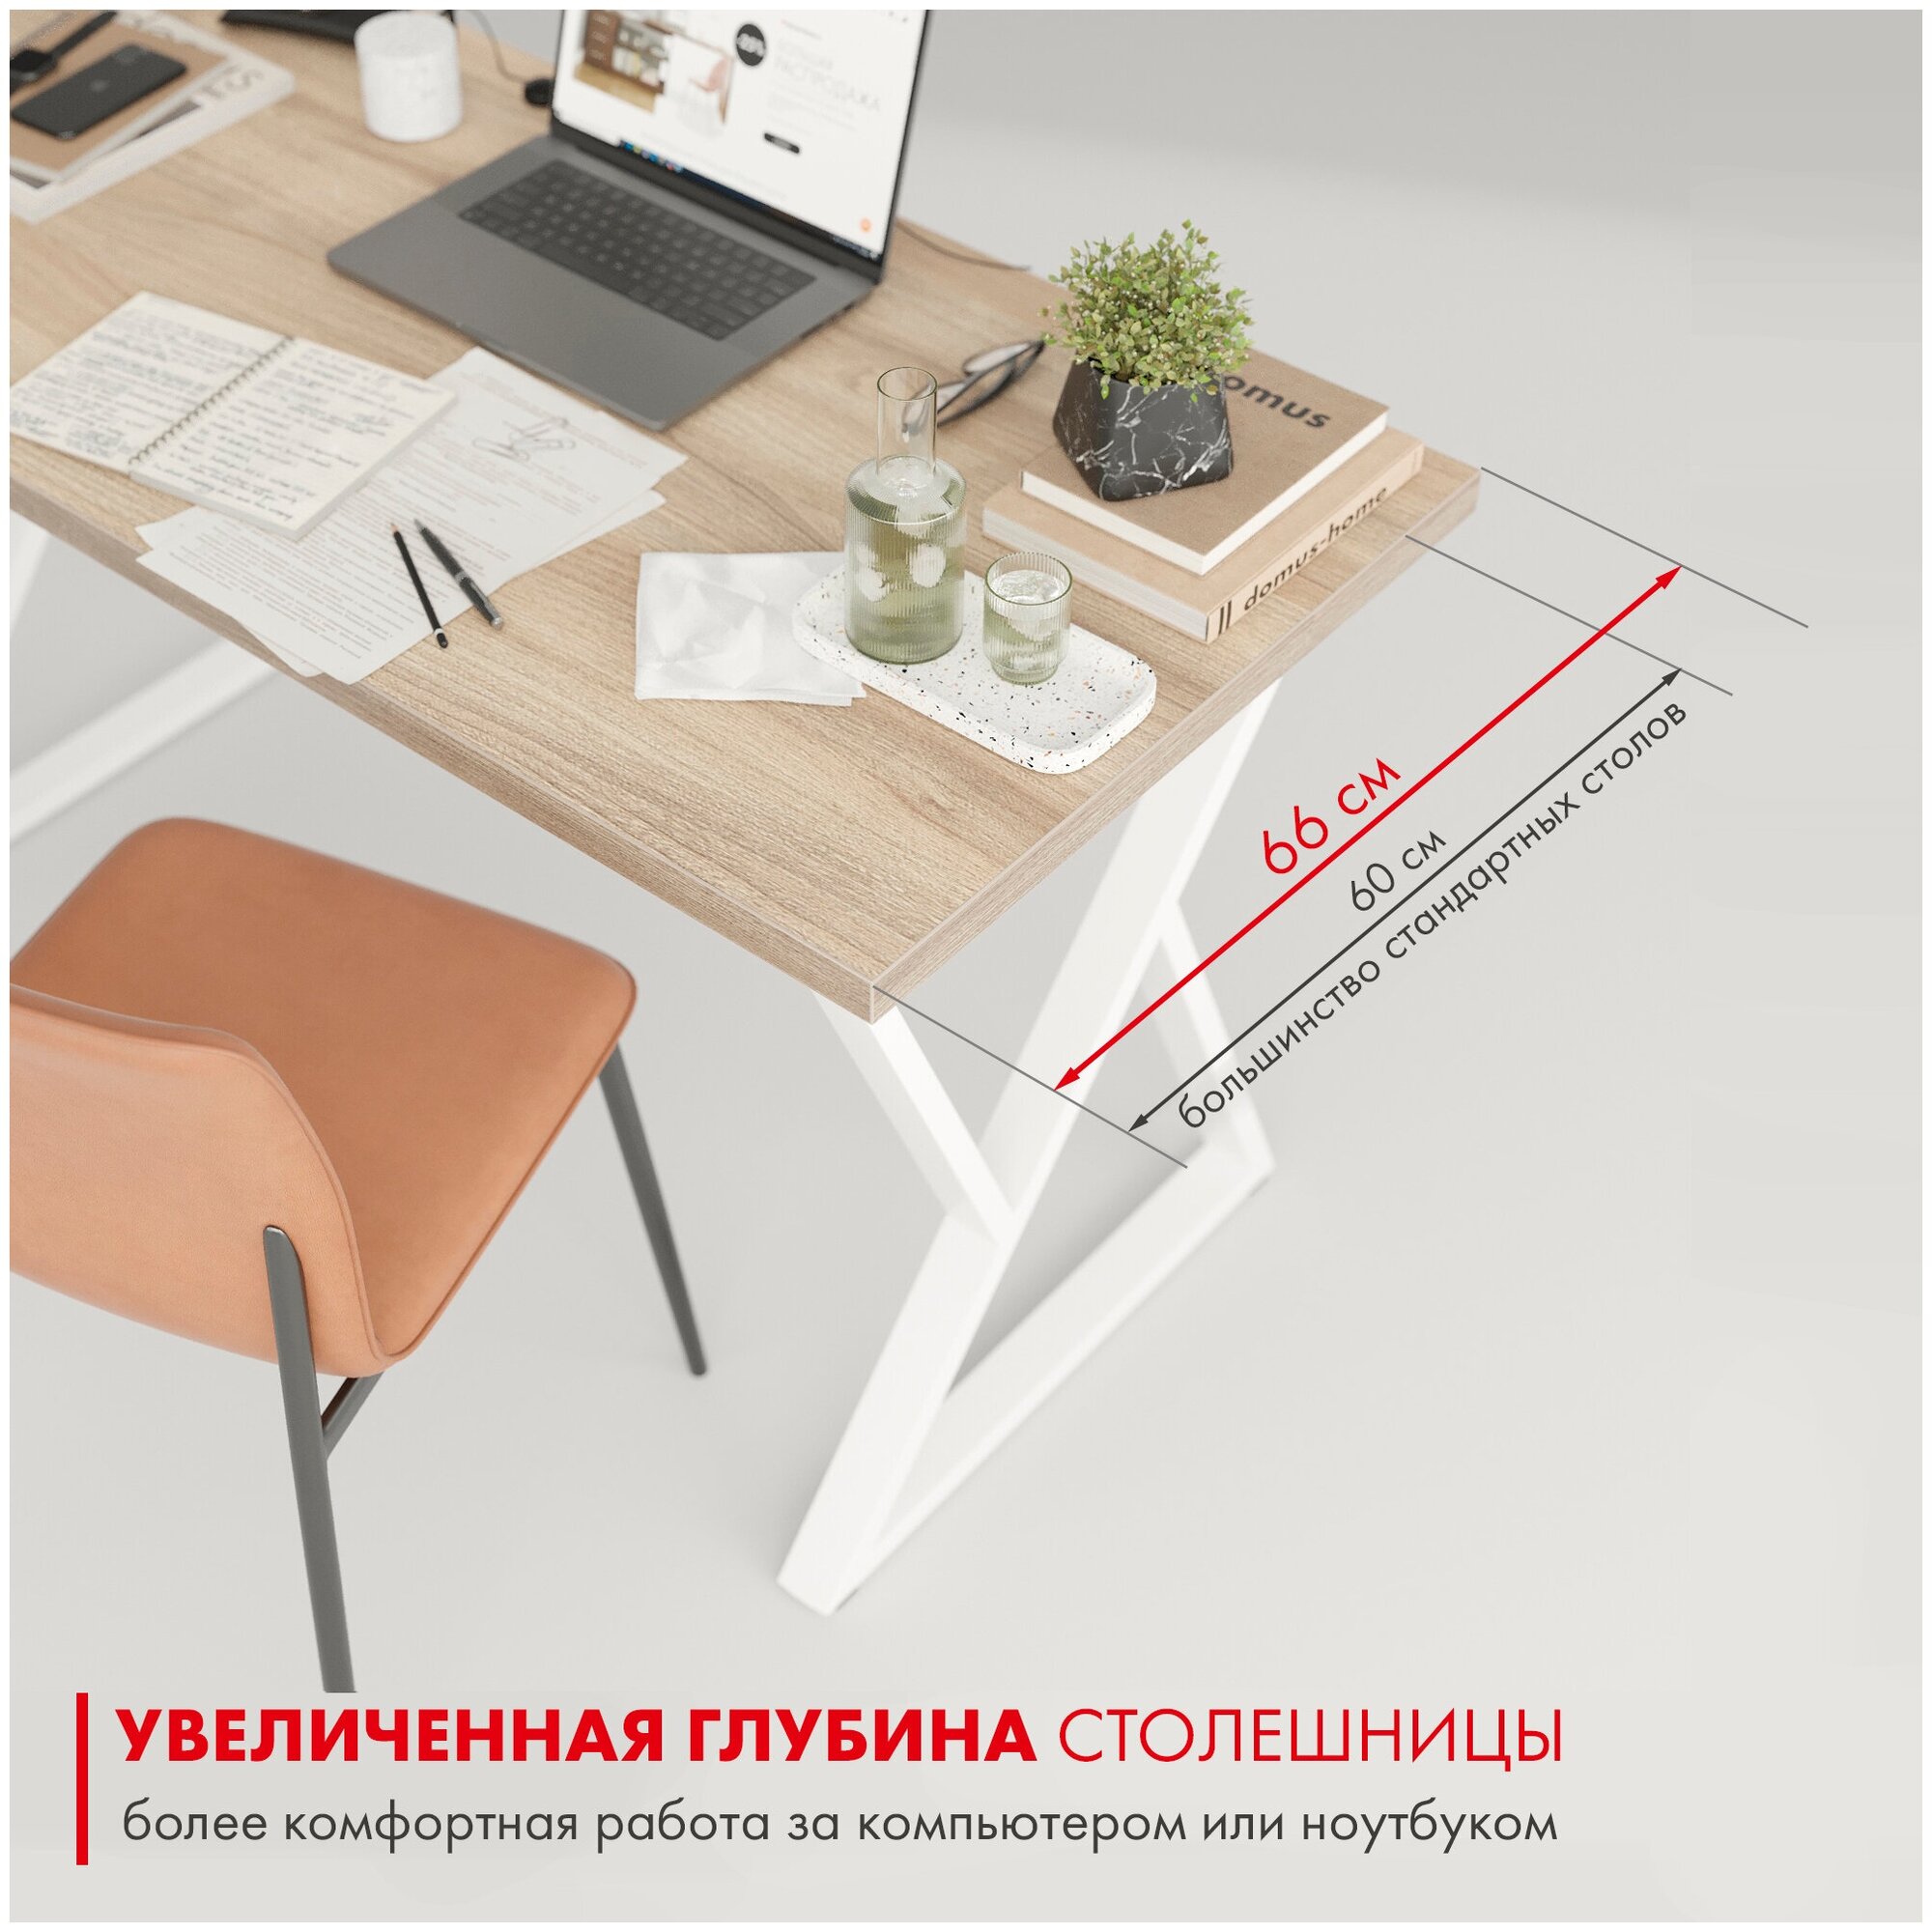 Письменный стол домус СП014 вяз светлый/металл белый (136 см)